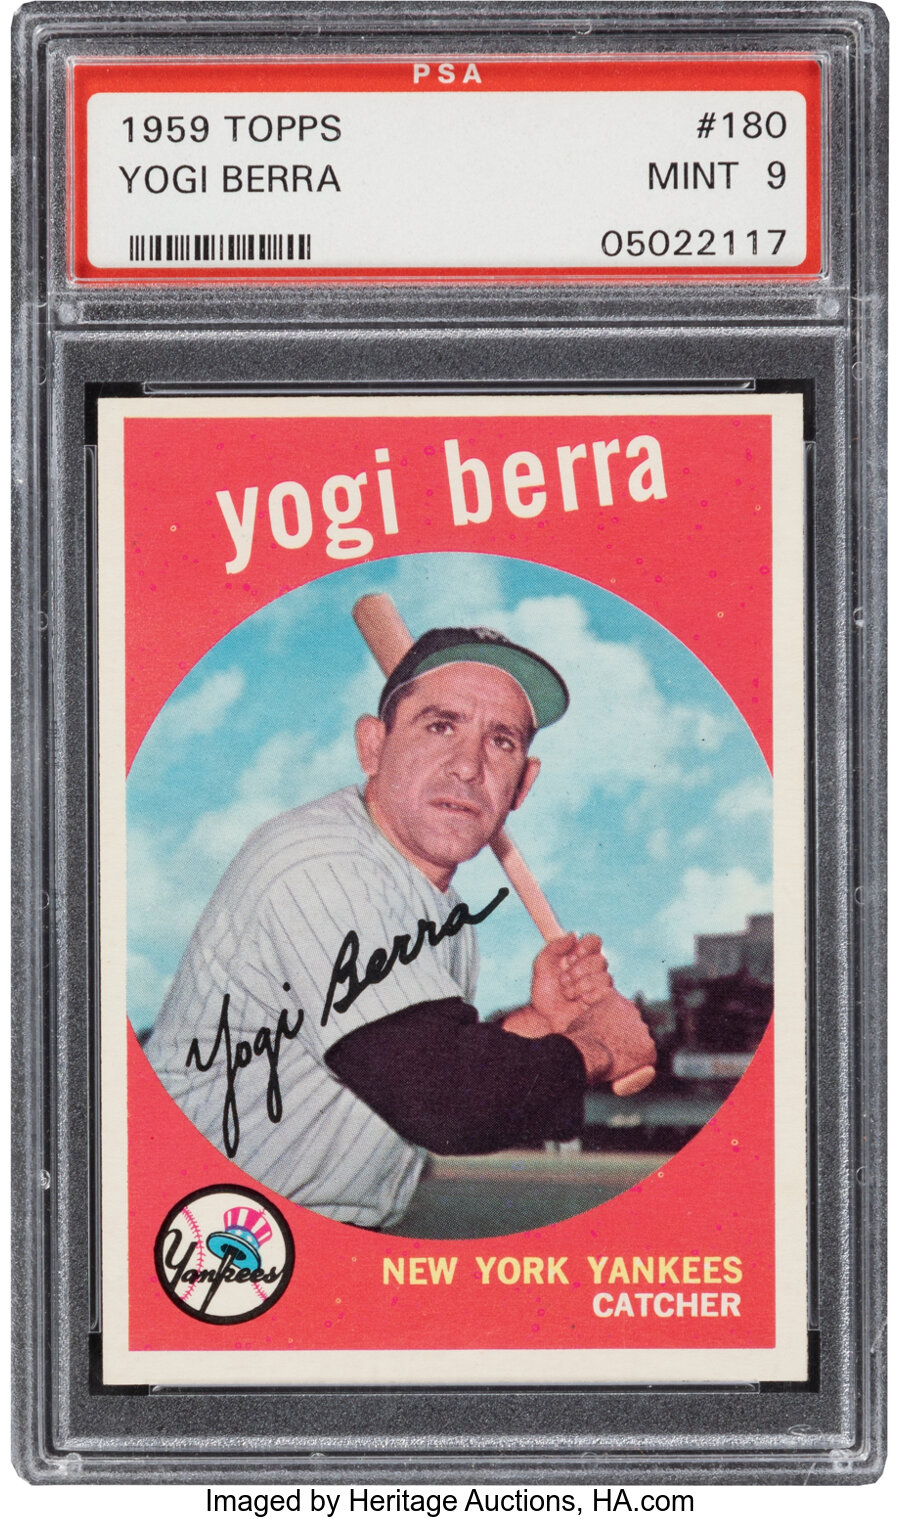 1959 Topps Yogi Berra #180 PSA Mint 9 - Only One Higher